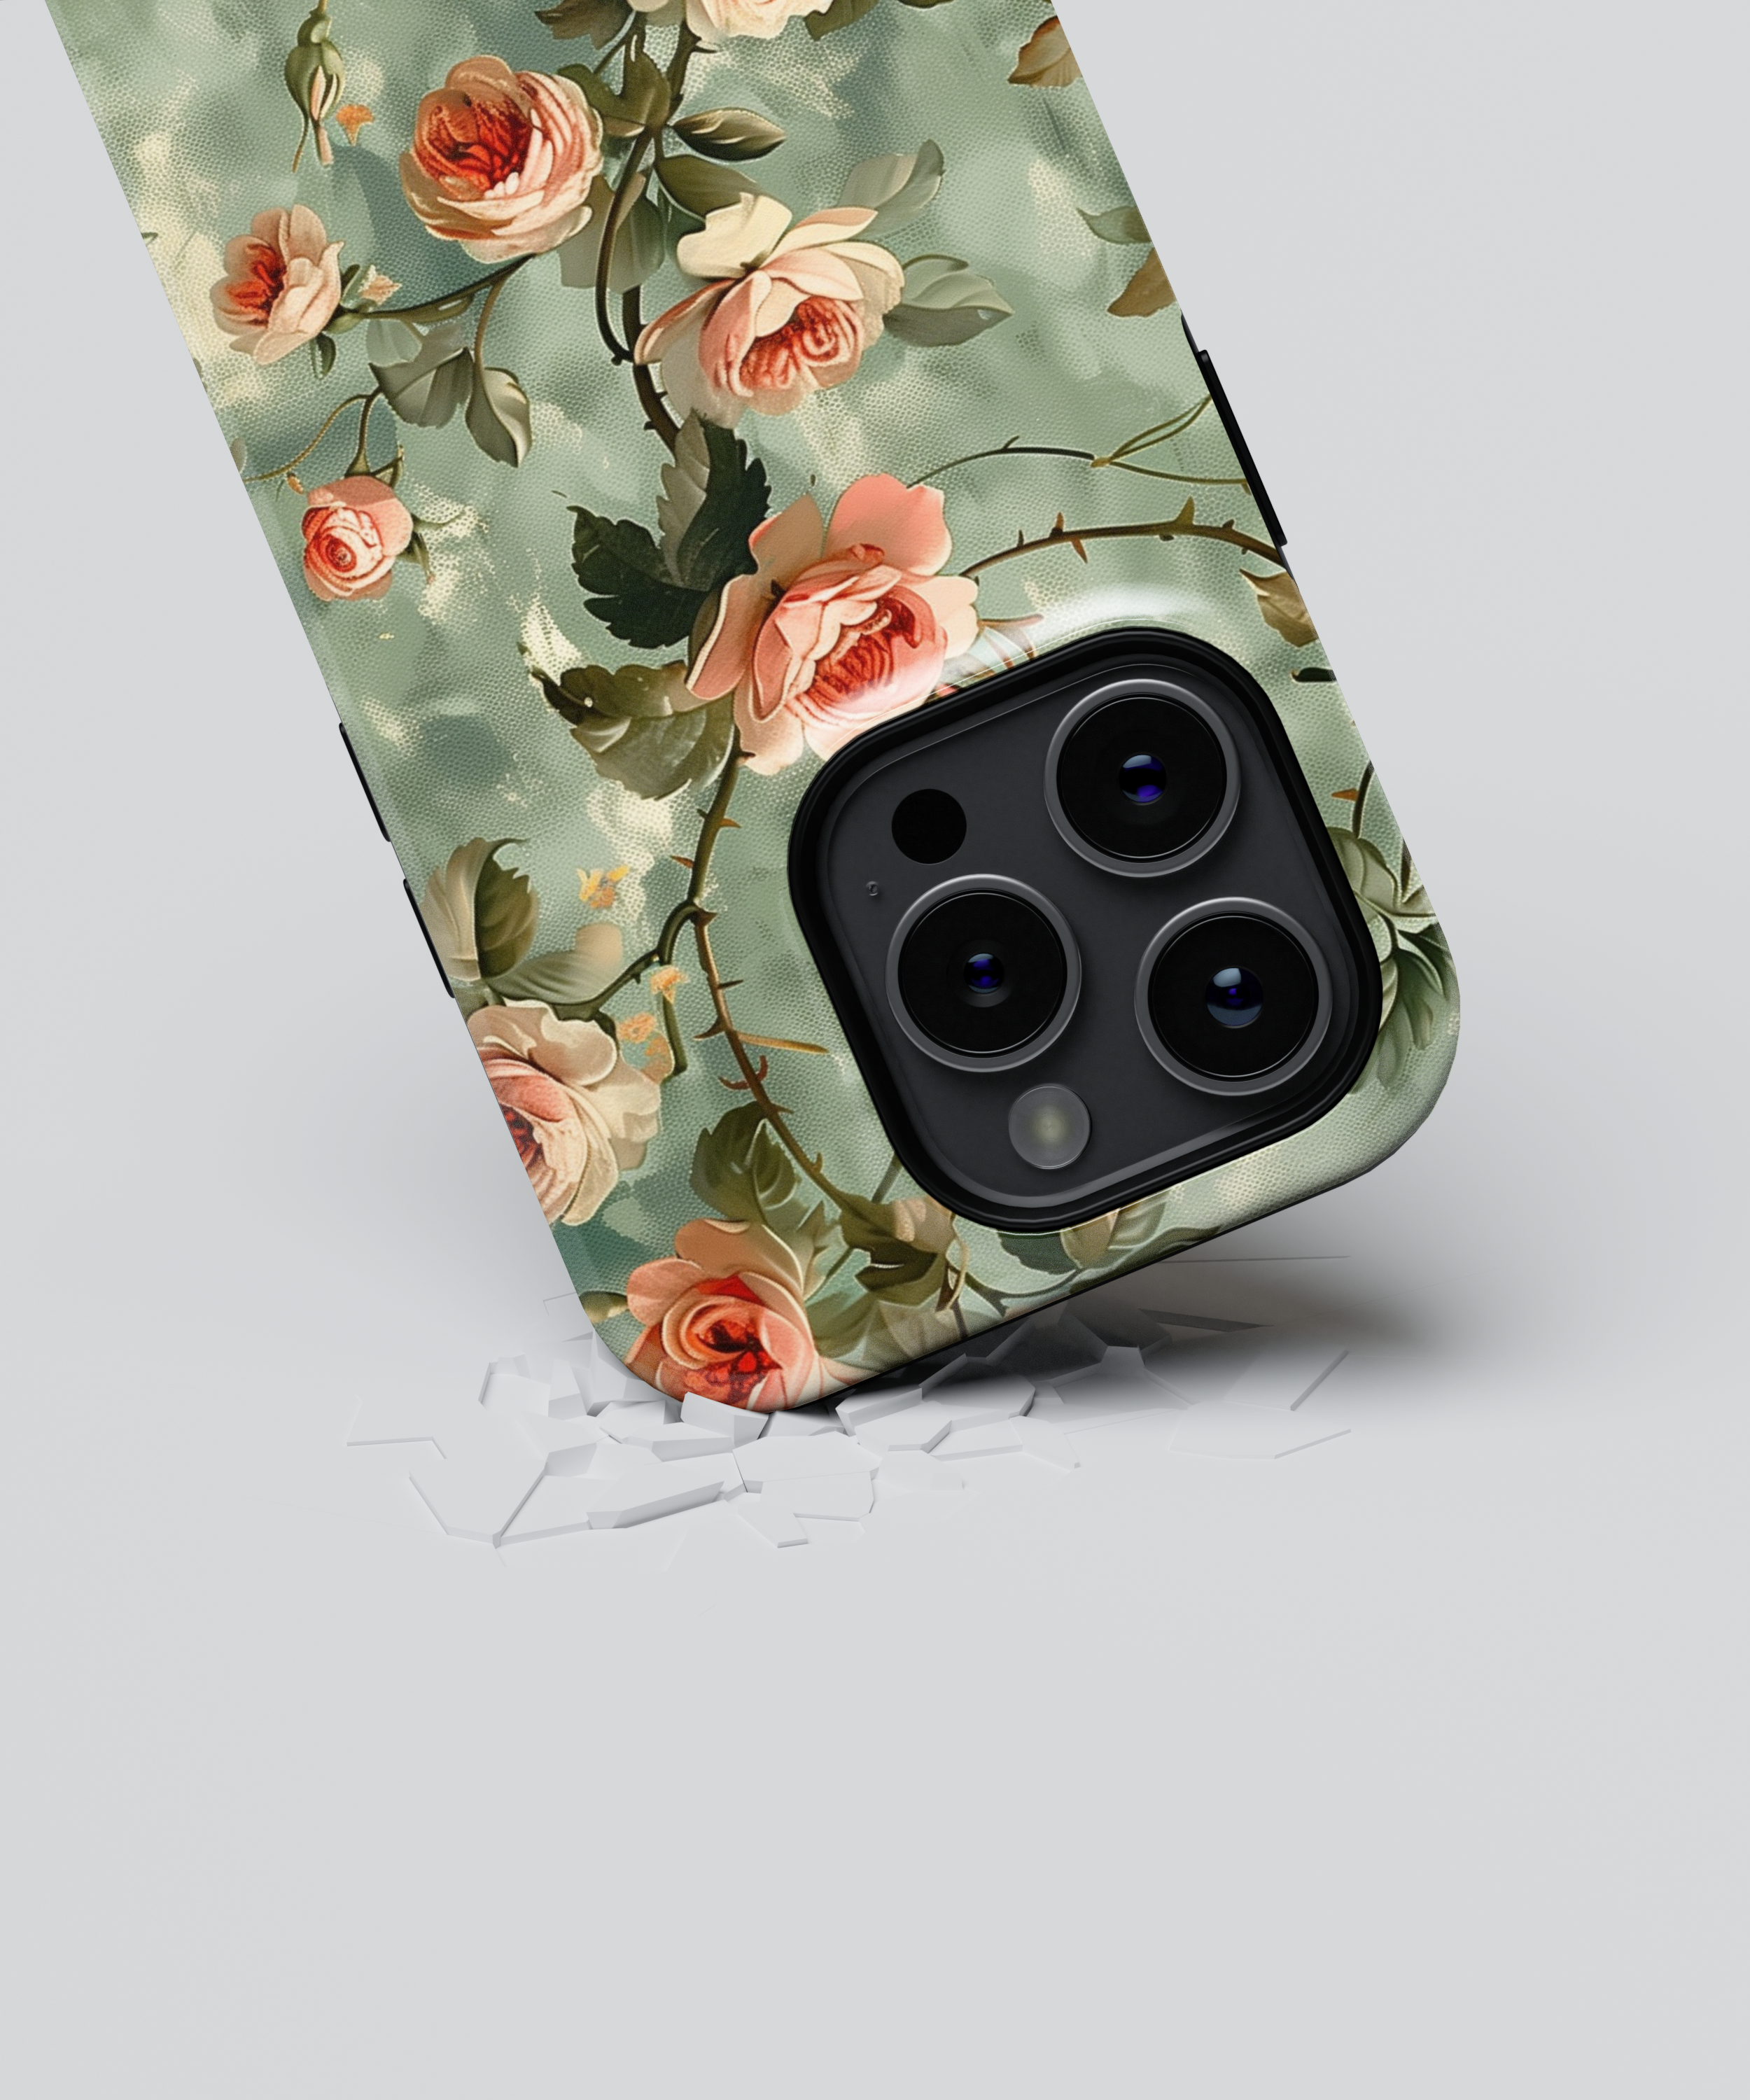 iPhone Tough Case with MagSafe - Petals Melody Garden - CASETEROID